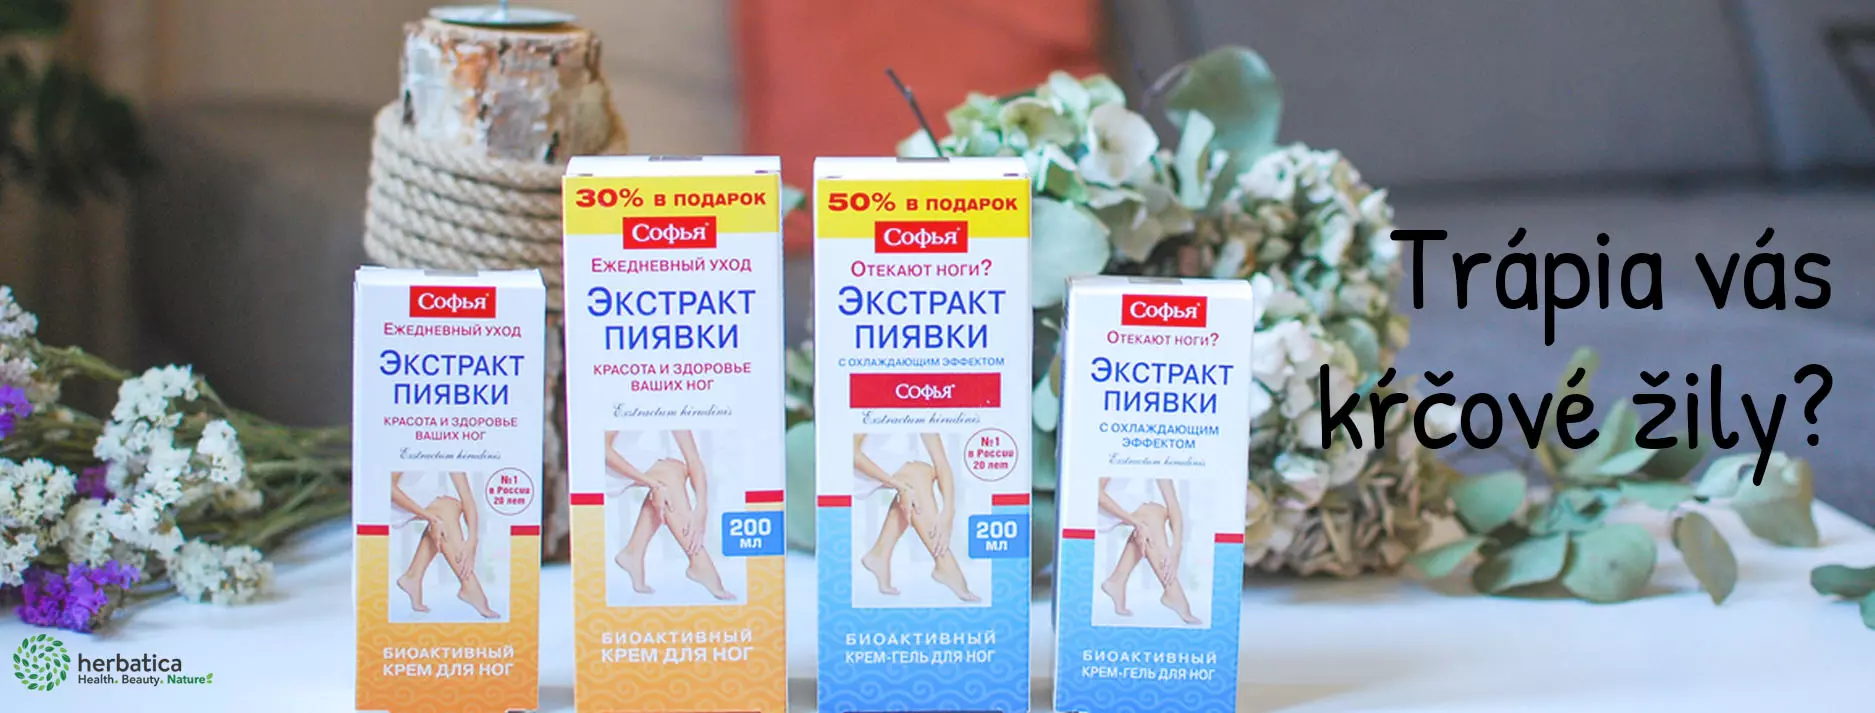 ruská medicína Herbatica